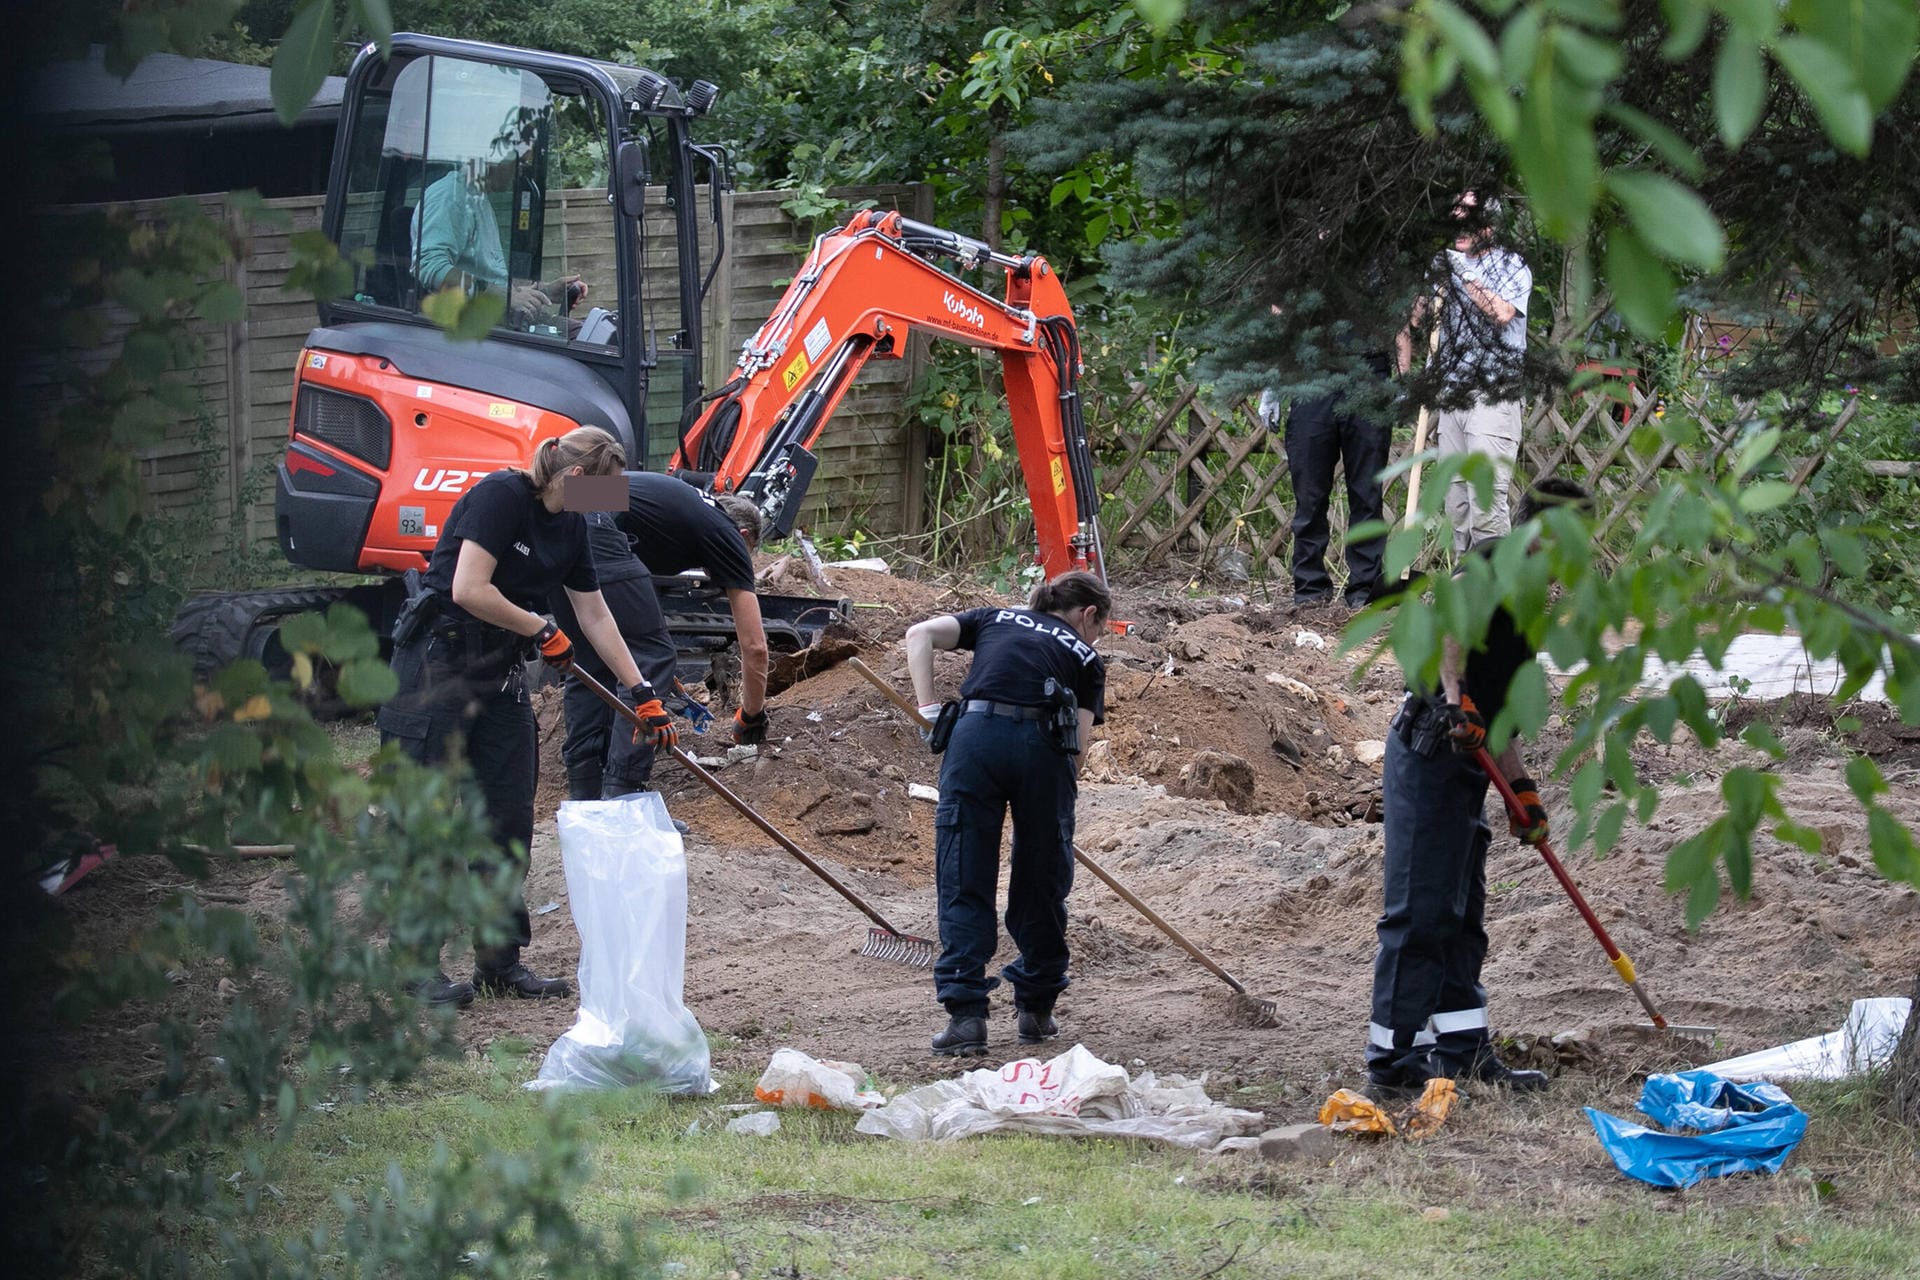 ... am 28. Juli in einer Kleingartenanlage am Stadtrand von Hannover mit Grabungsarbeiten begonnen.